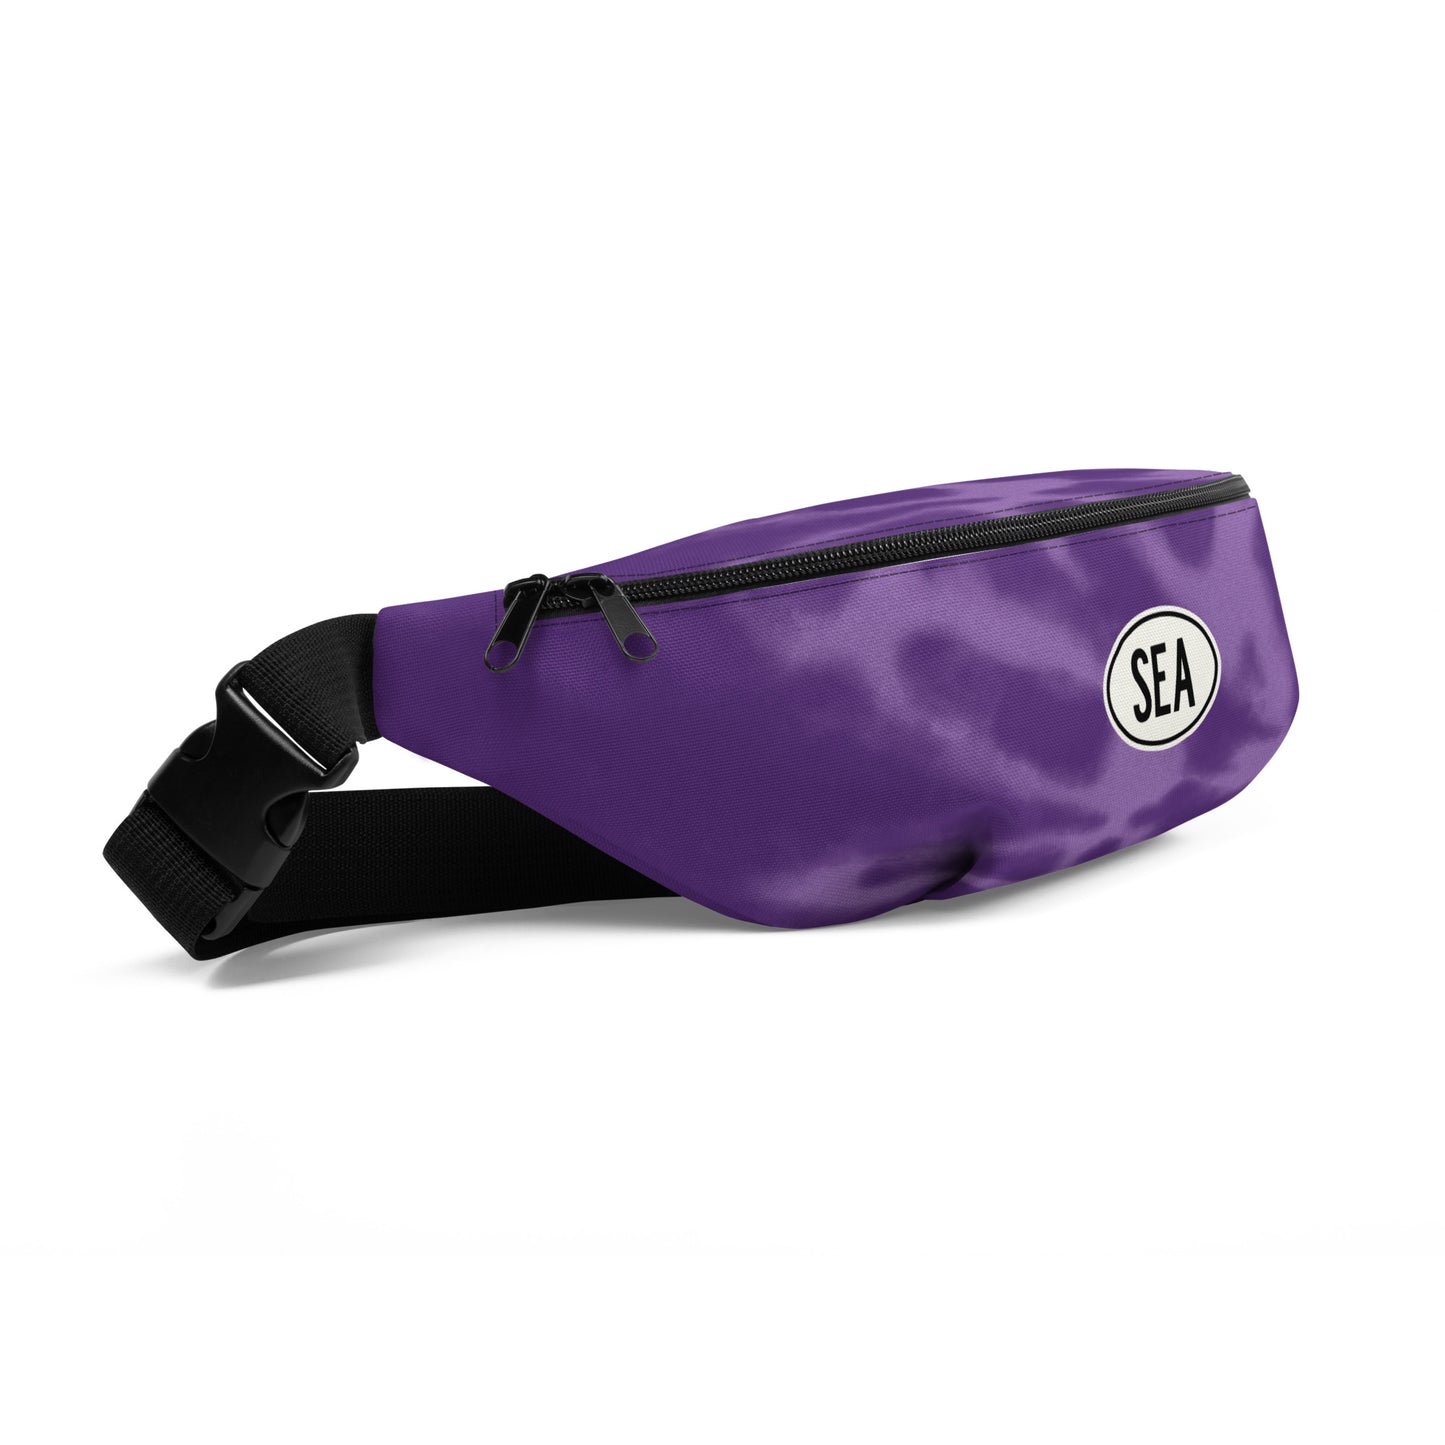 Travel Gift Fanny Pack - Purple Tie-Dye • SEA Seattle • YHM Designs - Image 07